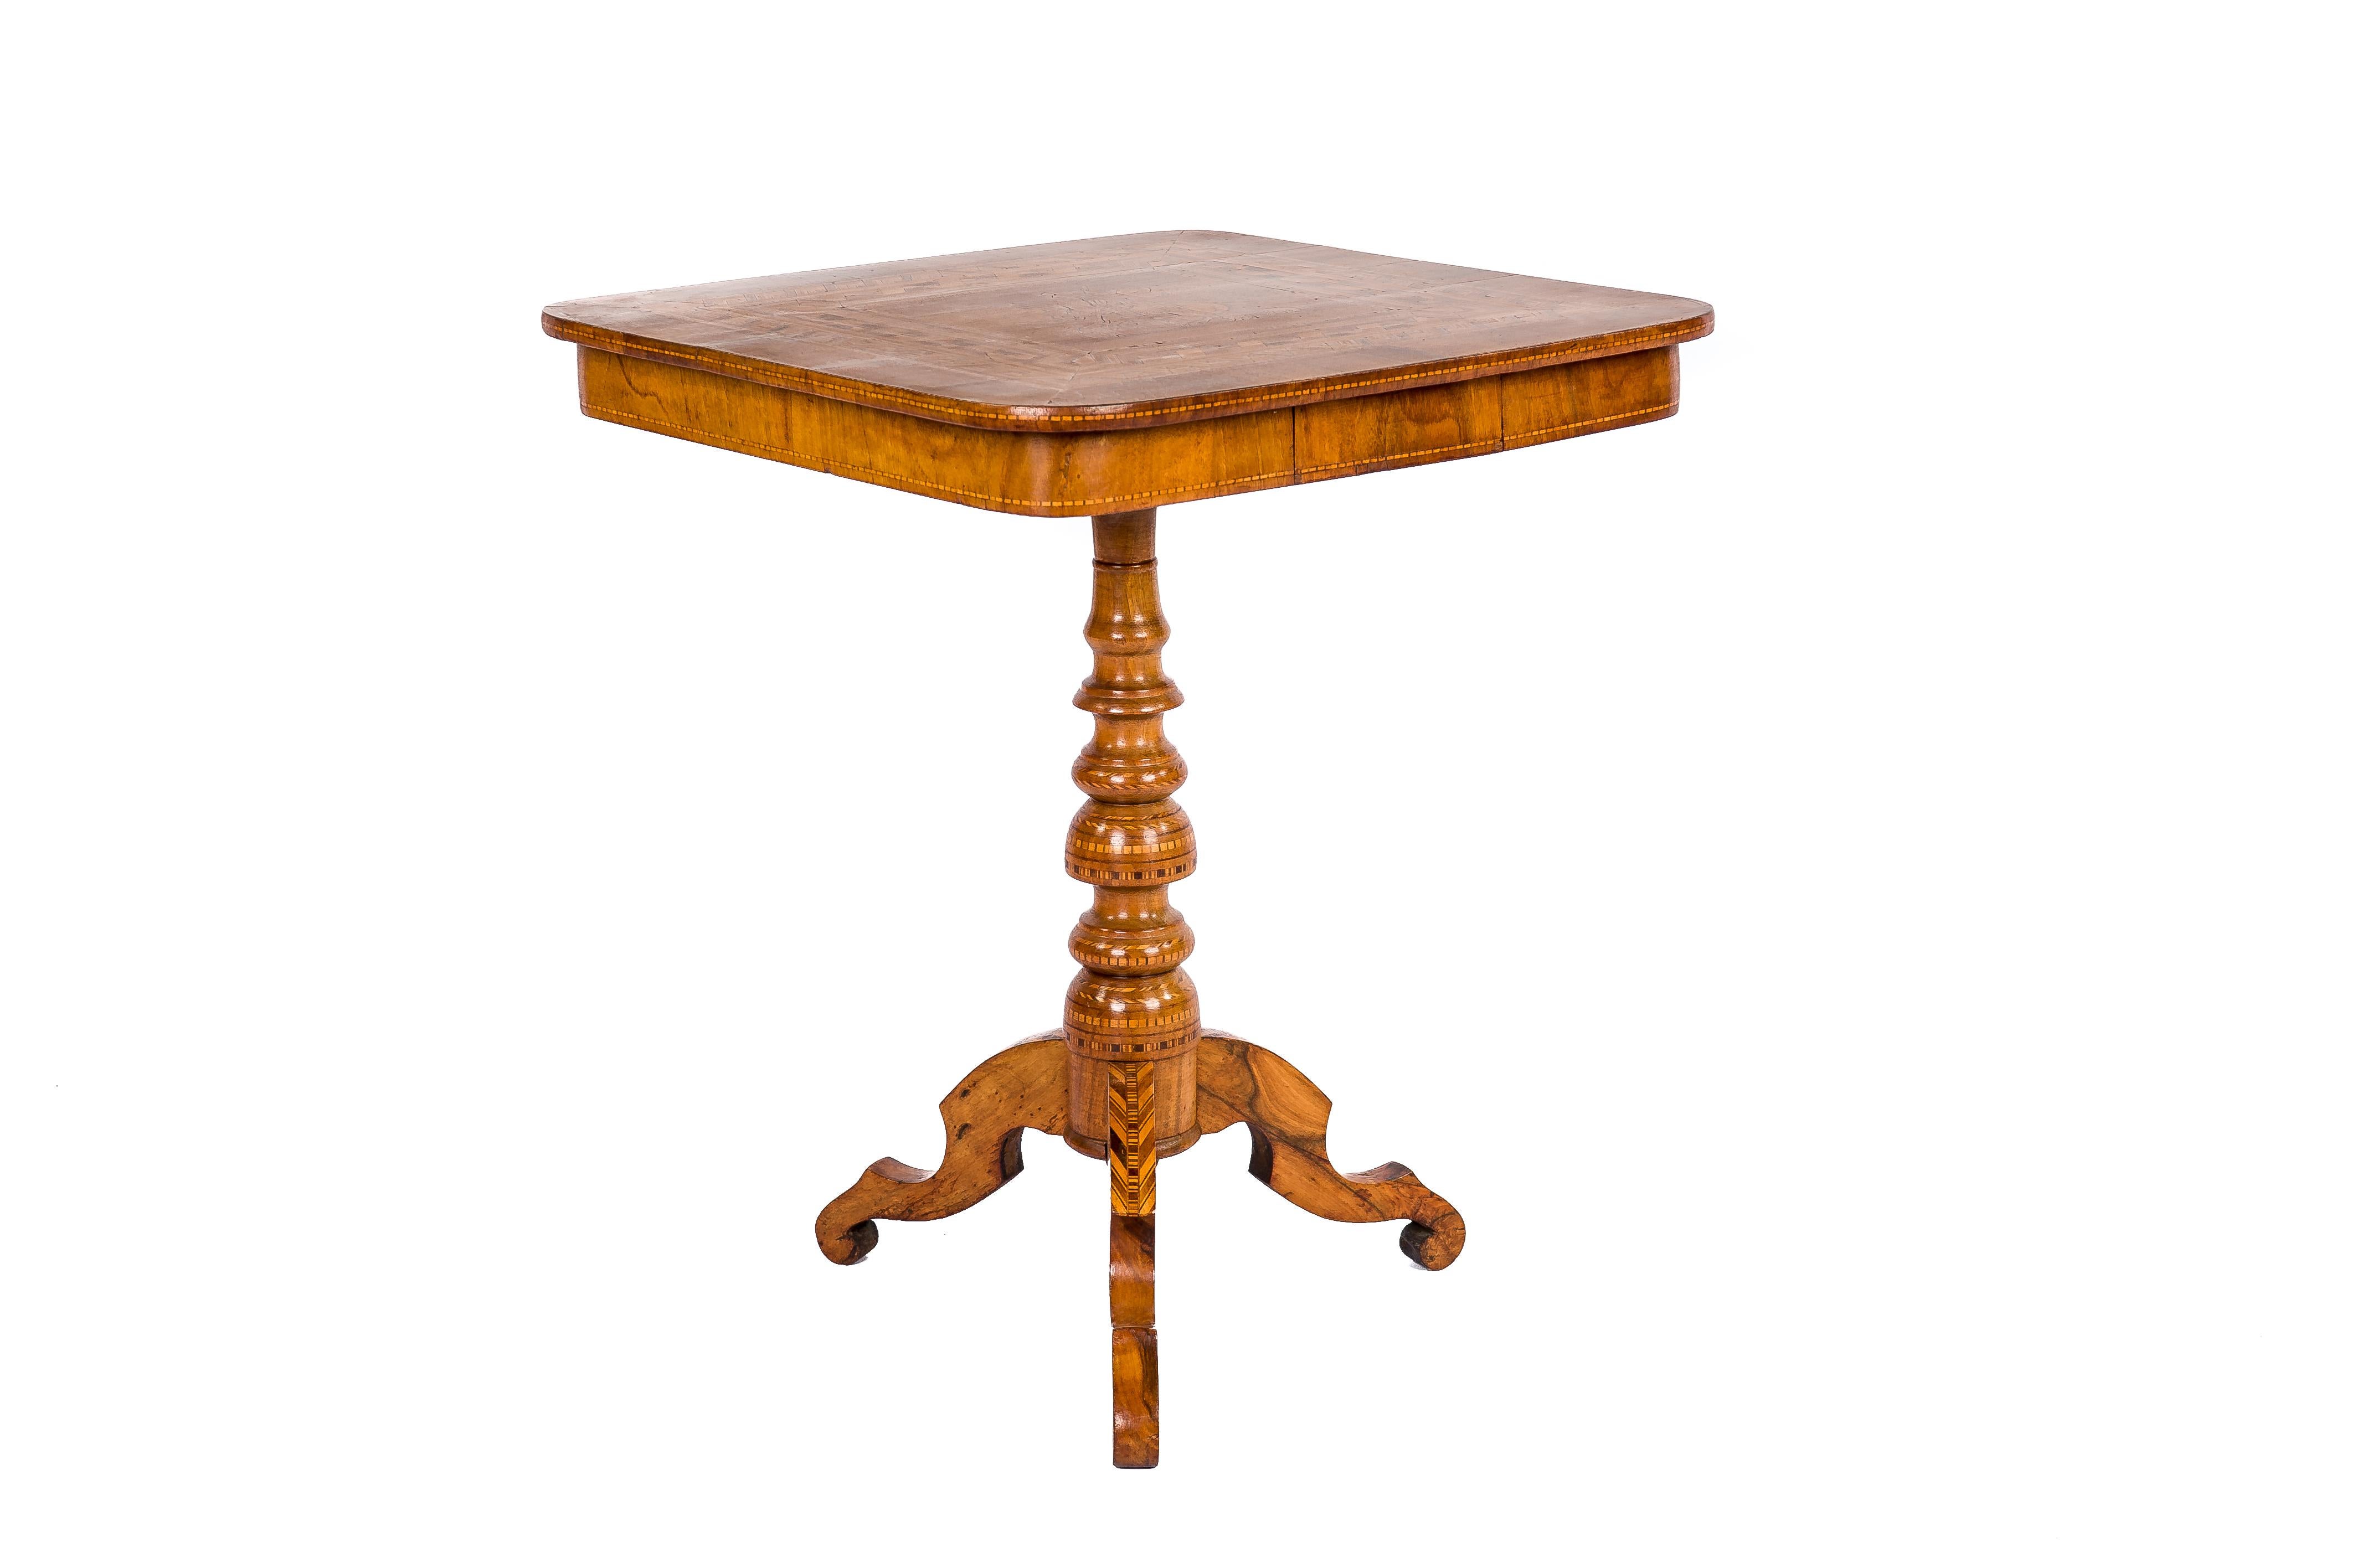 Ein schöner Beistelltisch mit kippbarer Platte, der um 1870 in Italien hergestellt wurde. Der Tisch ist stark mit Intarsien verziert, die aus verschiedenen Edelhölzern wie Olivenholz, Nussbaum, Mahagoni und Obstholz gefertigt sind. Der Tisch hat